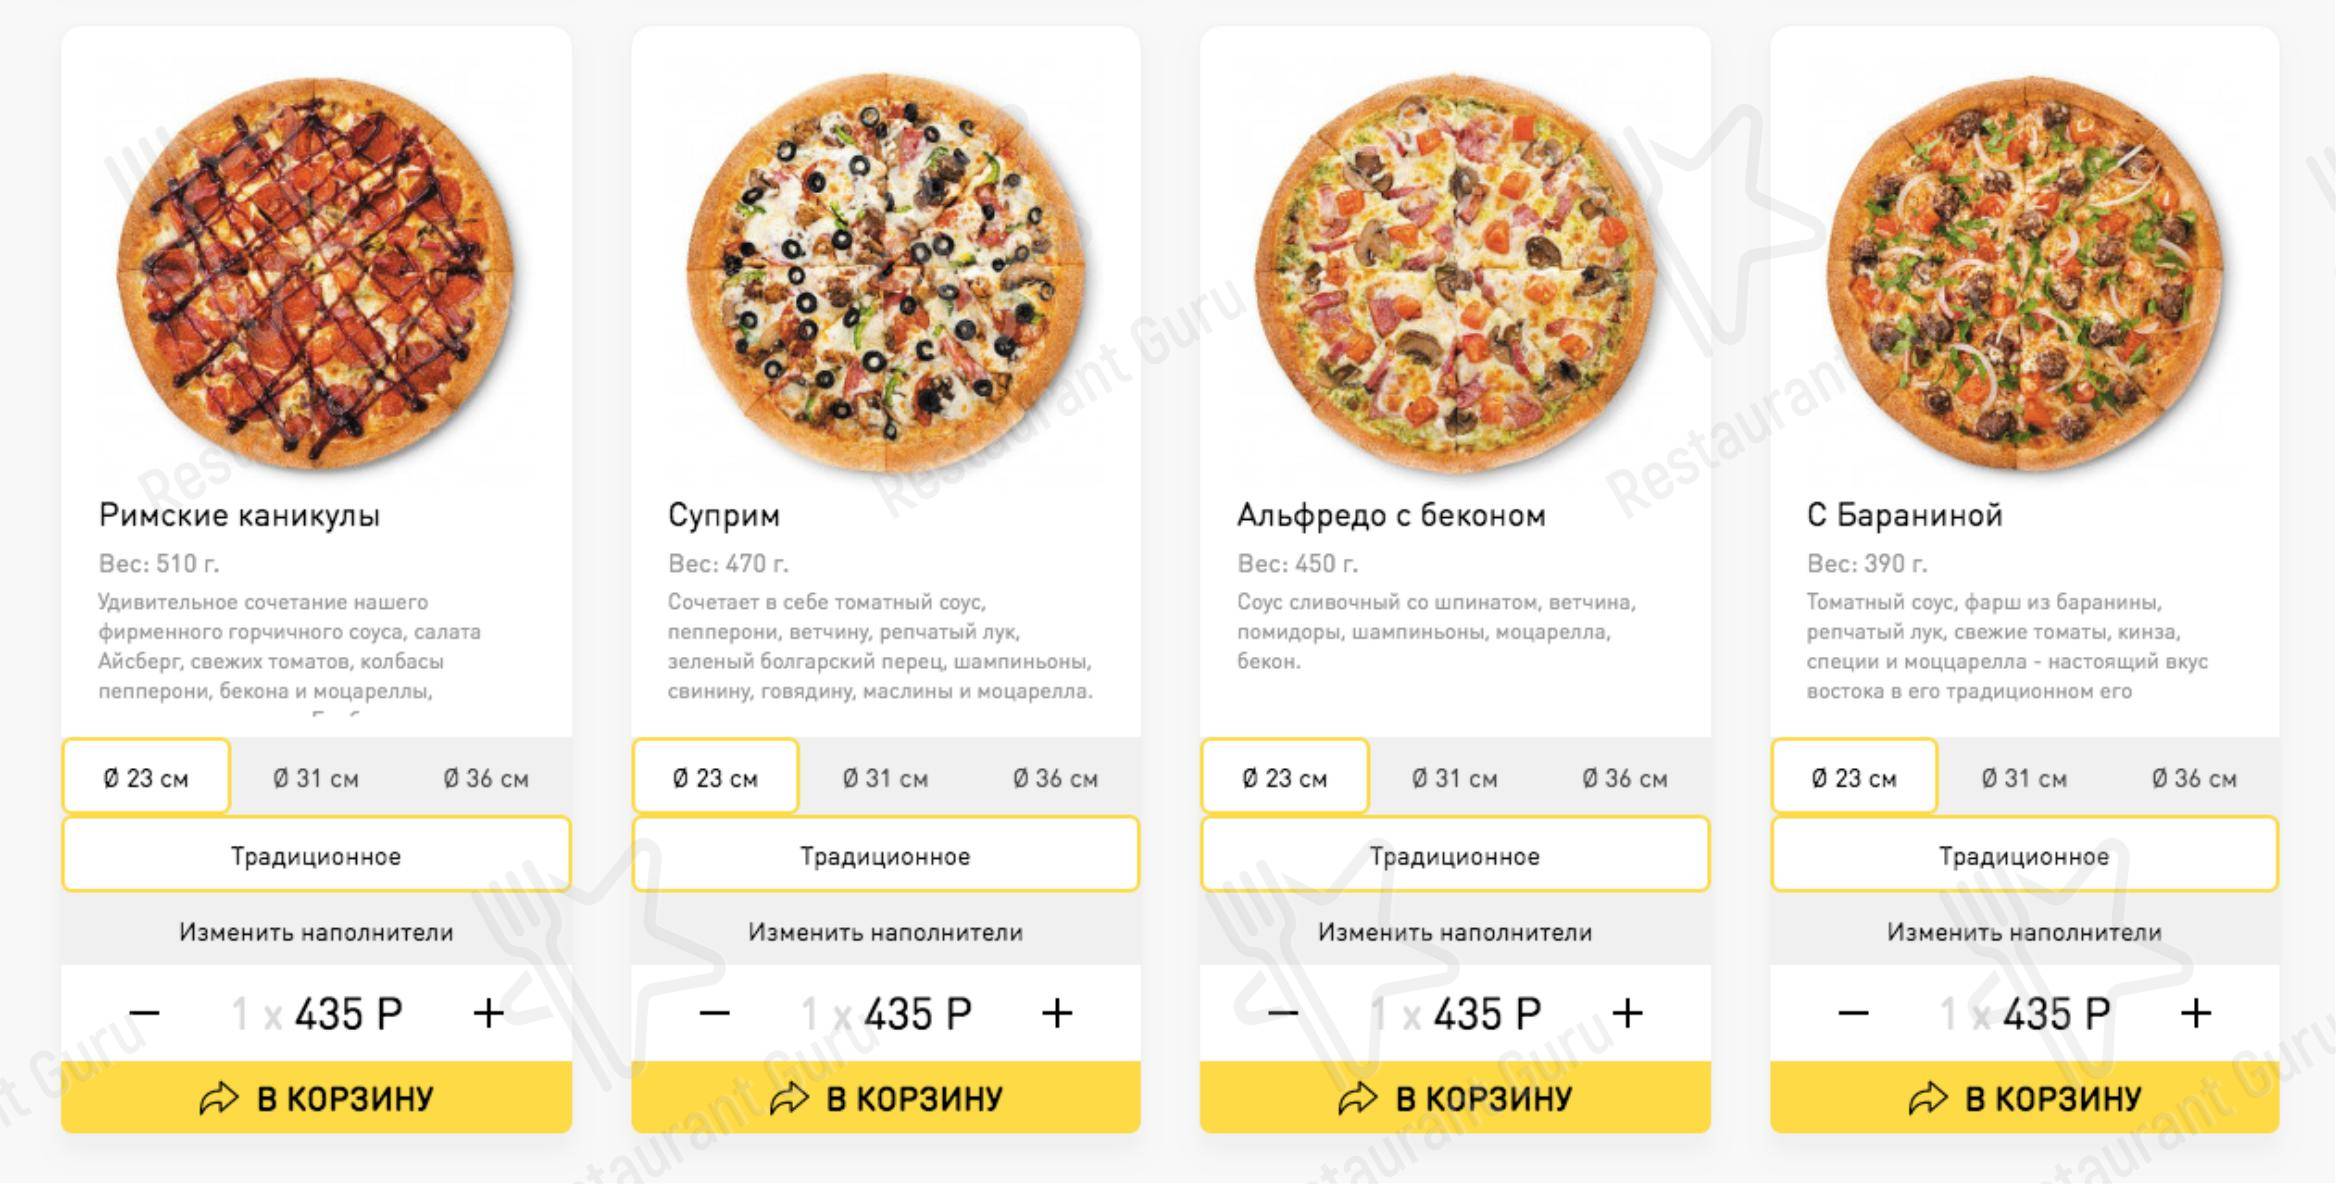 лучшая доставка пиццы в москве рейтинг фото 101